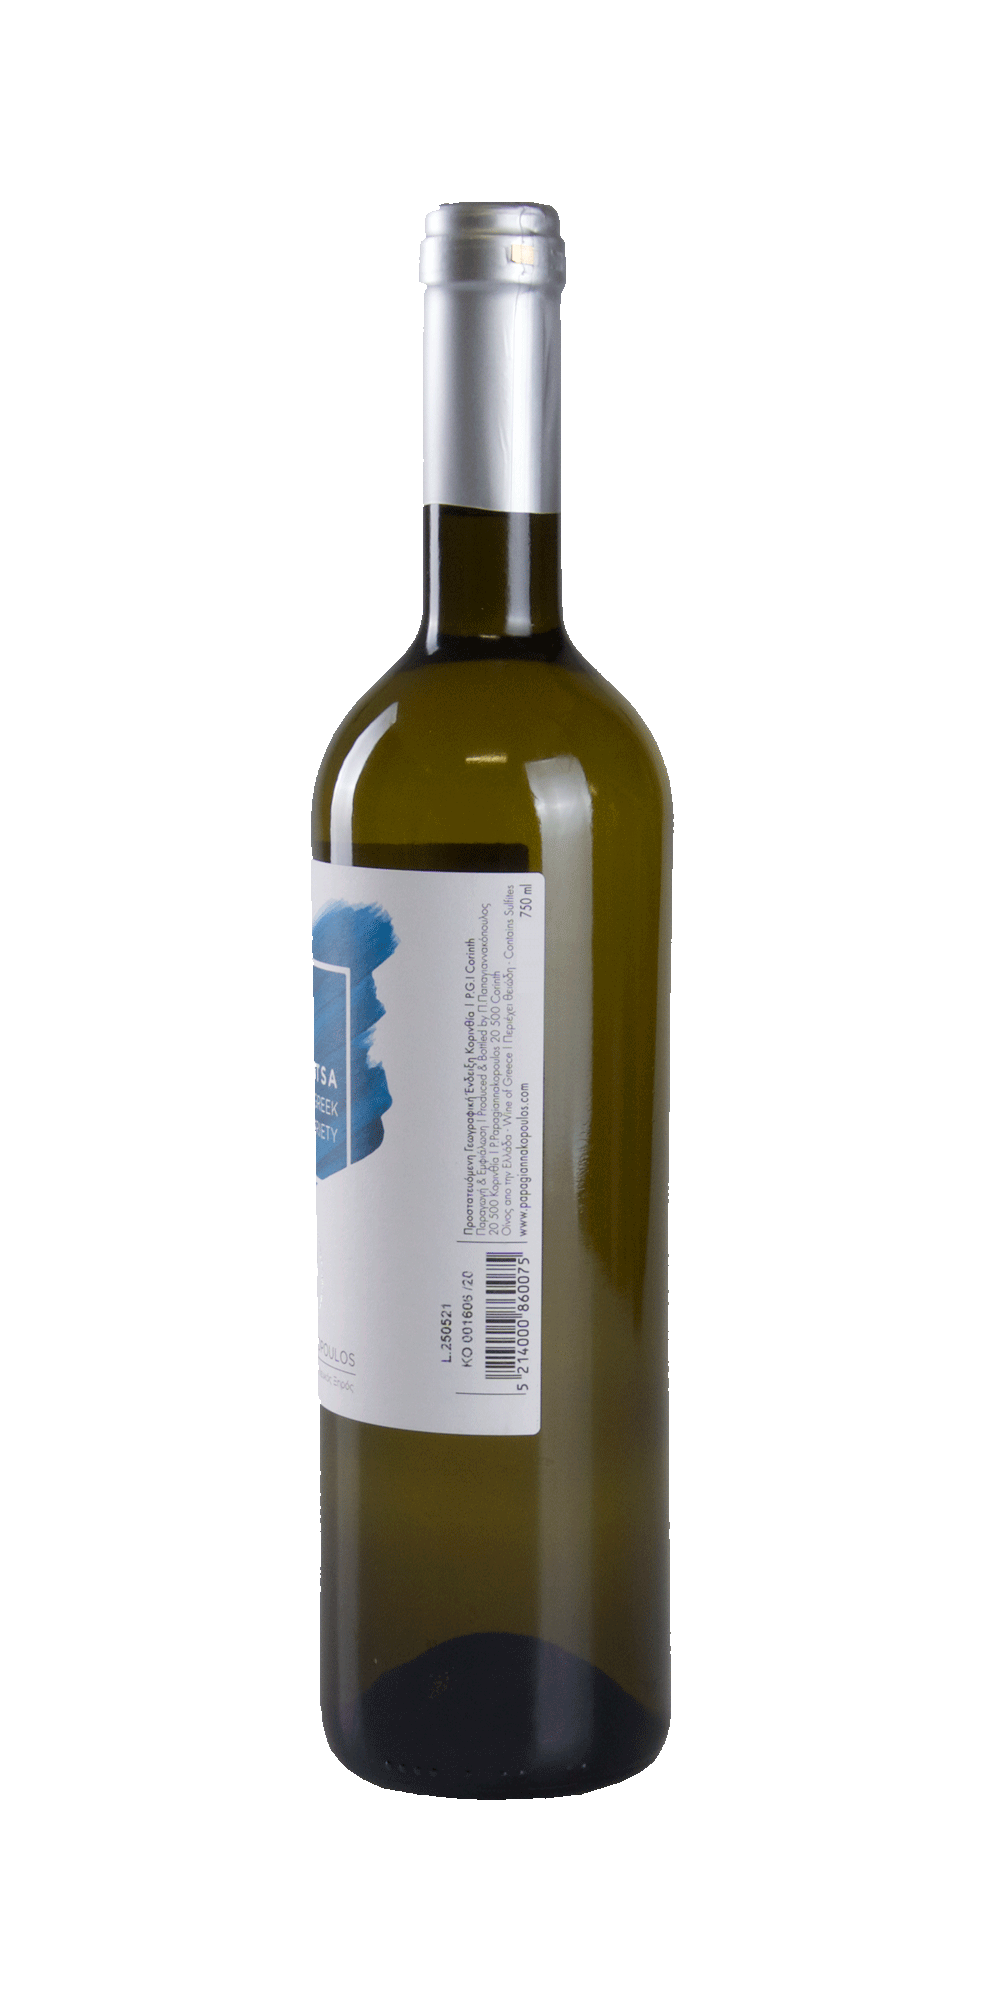 Kidonitsa 2020 - Papagiannakopoulos Winery